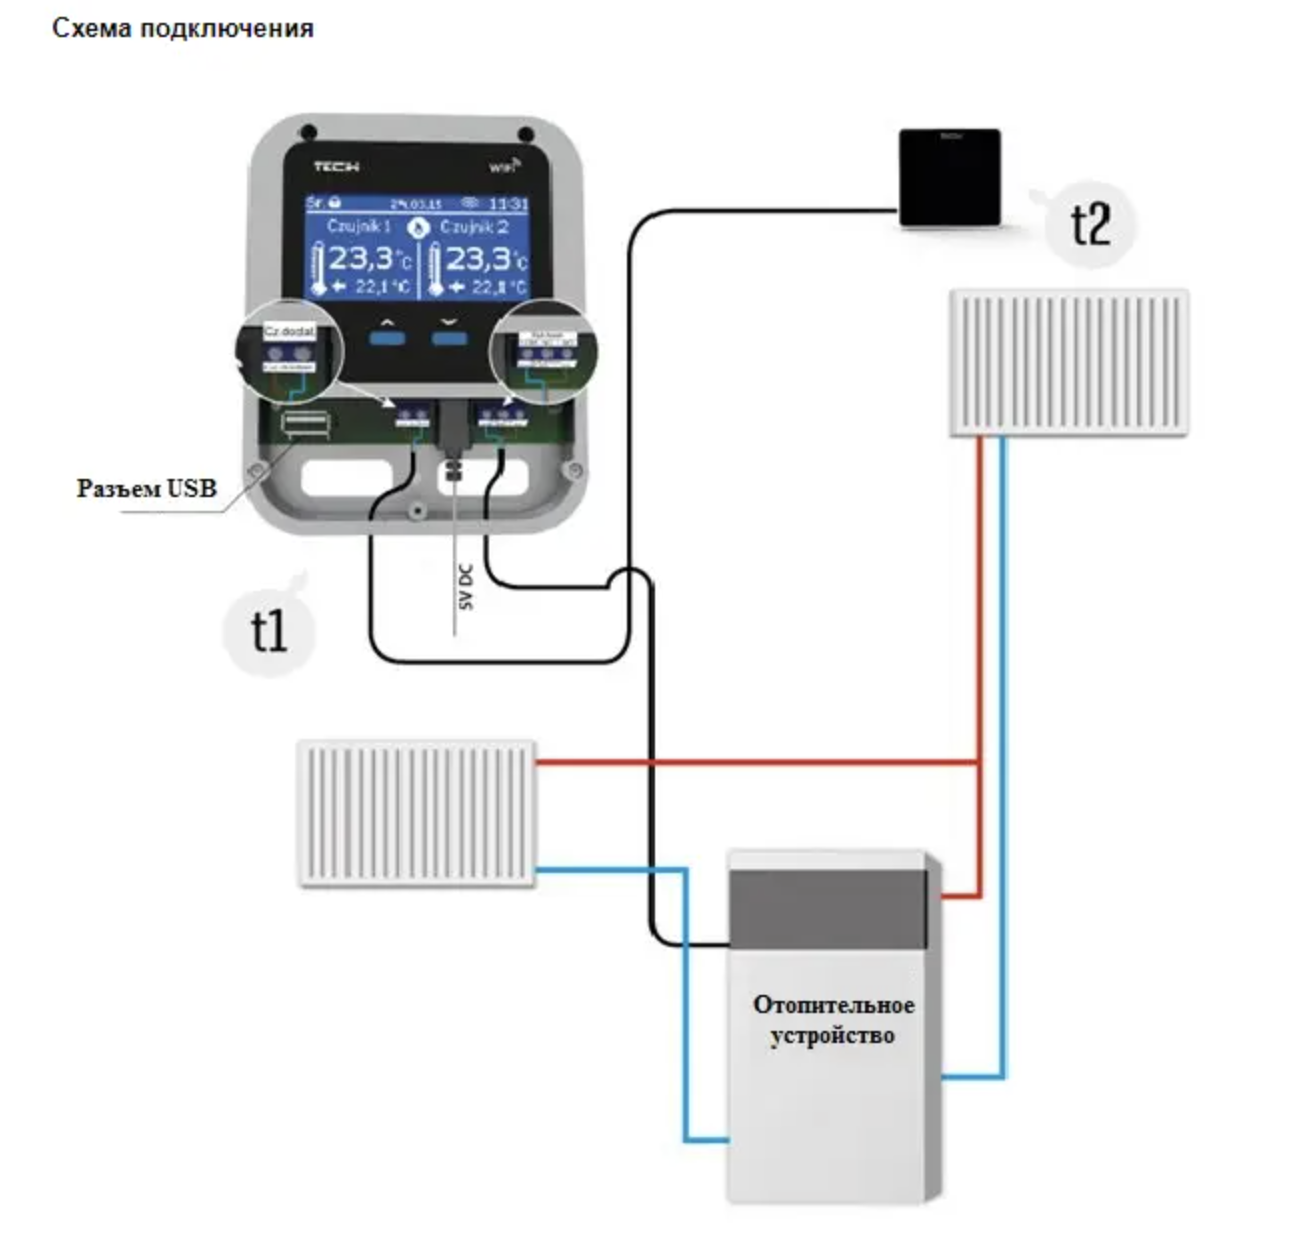 Схема подключения Wi-Fi модуль ТМ DEFRO в систему отопления